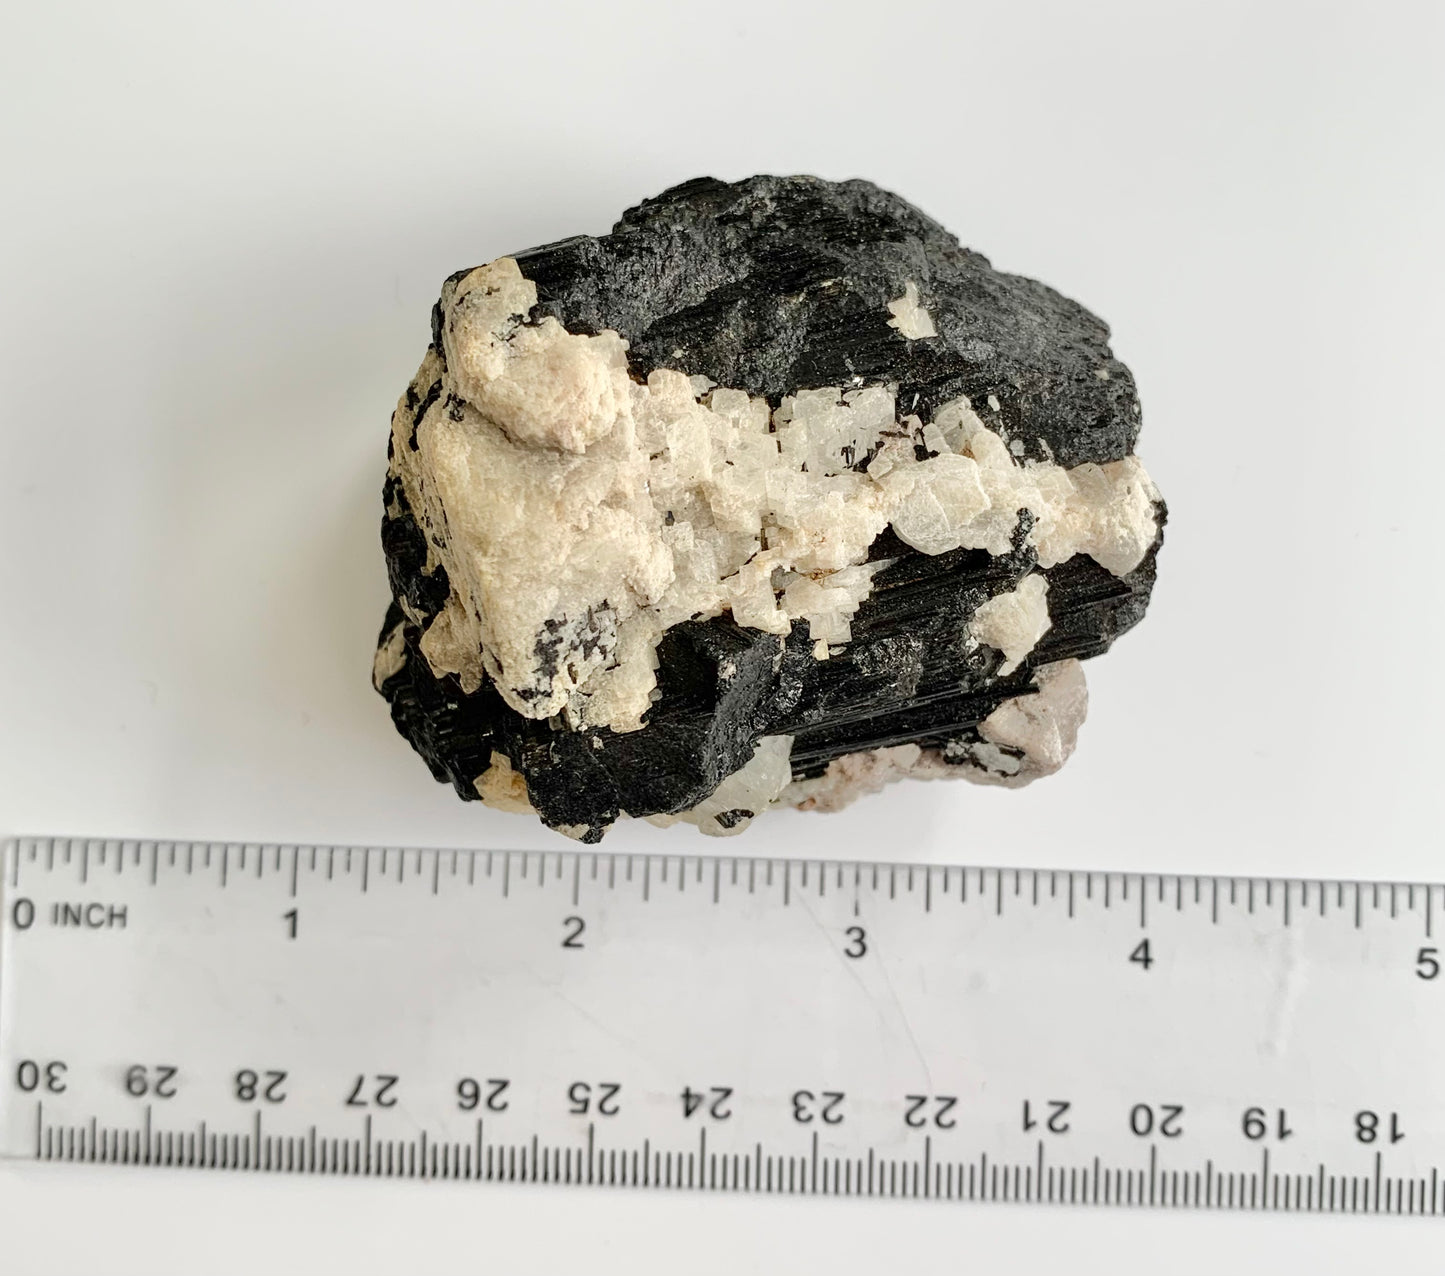 Black Tourmaline with quartz